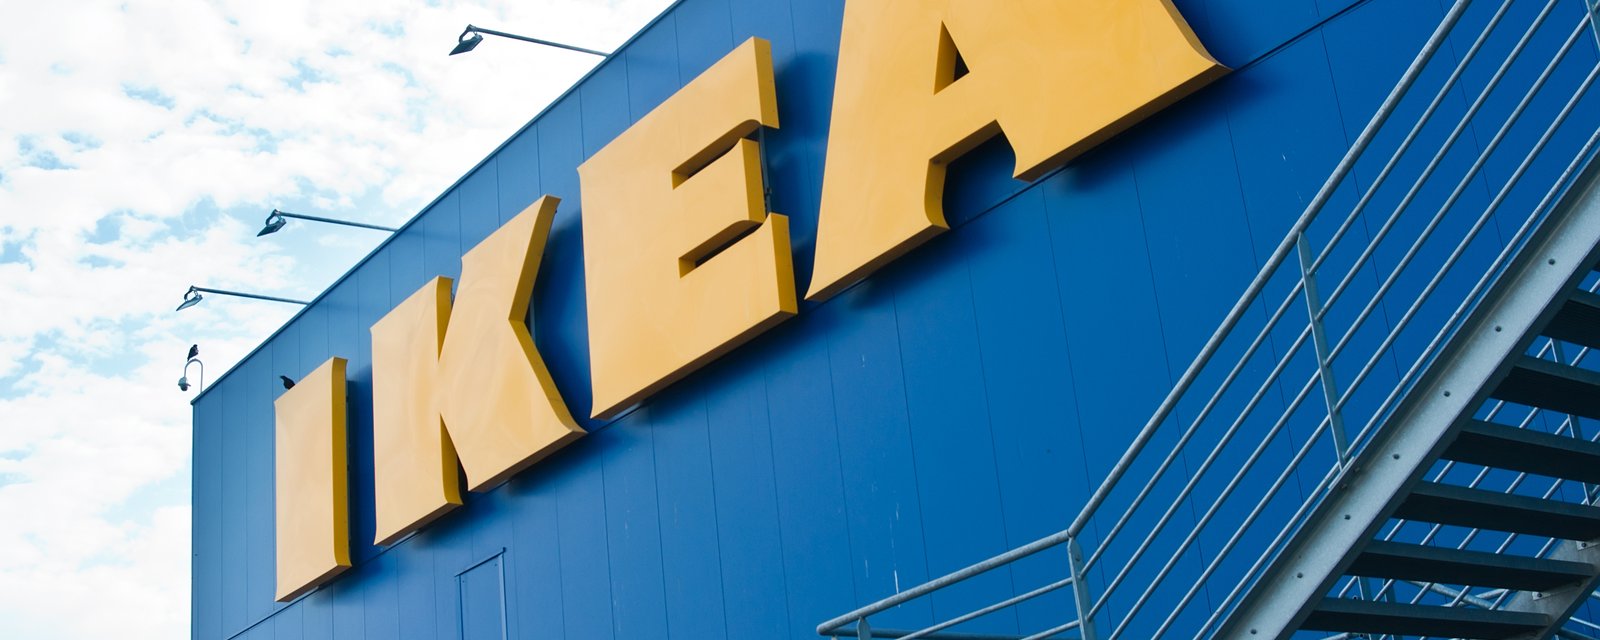 L'un de ces 6 meubles IKEA pourrait vous rapporter beaucoup d'argent si vous l'avez à la maison